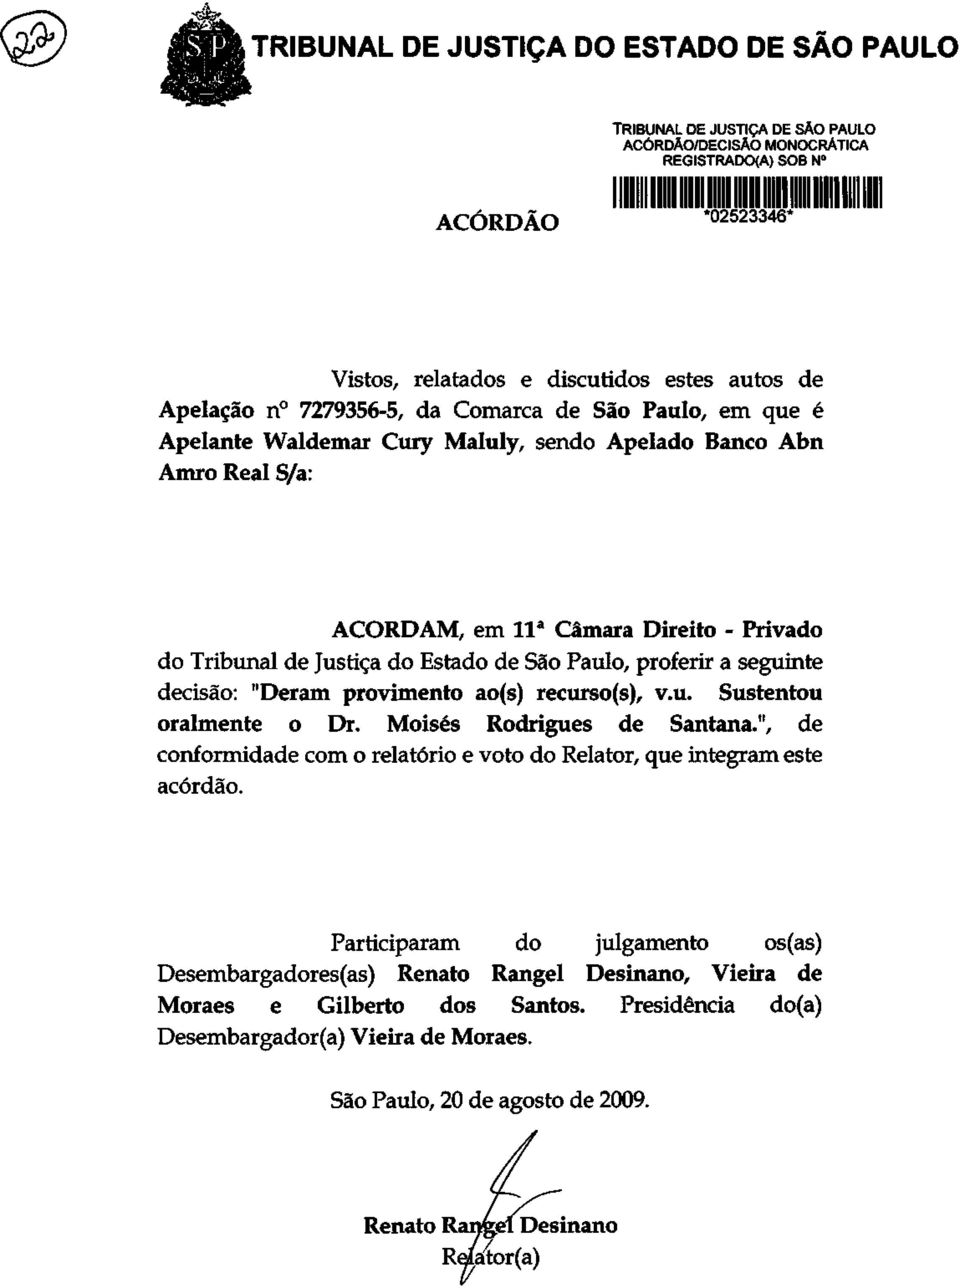 Paulo, proferir a seguinte decisão: "Deram provimento ao(s) recurso(s), v.u. Sustentou oralmente o Dr. Moisés Rodrigues de Santana.